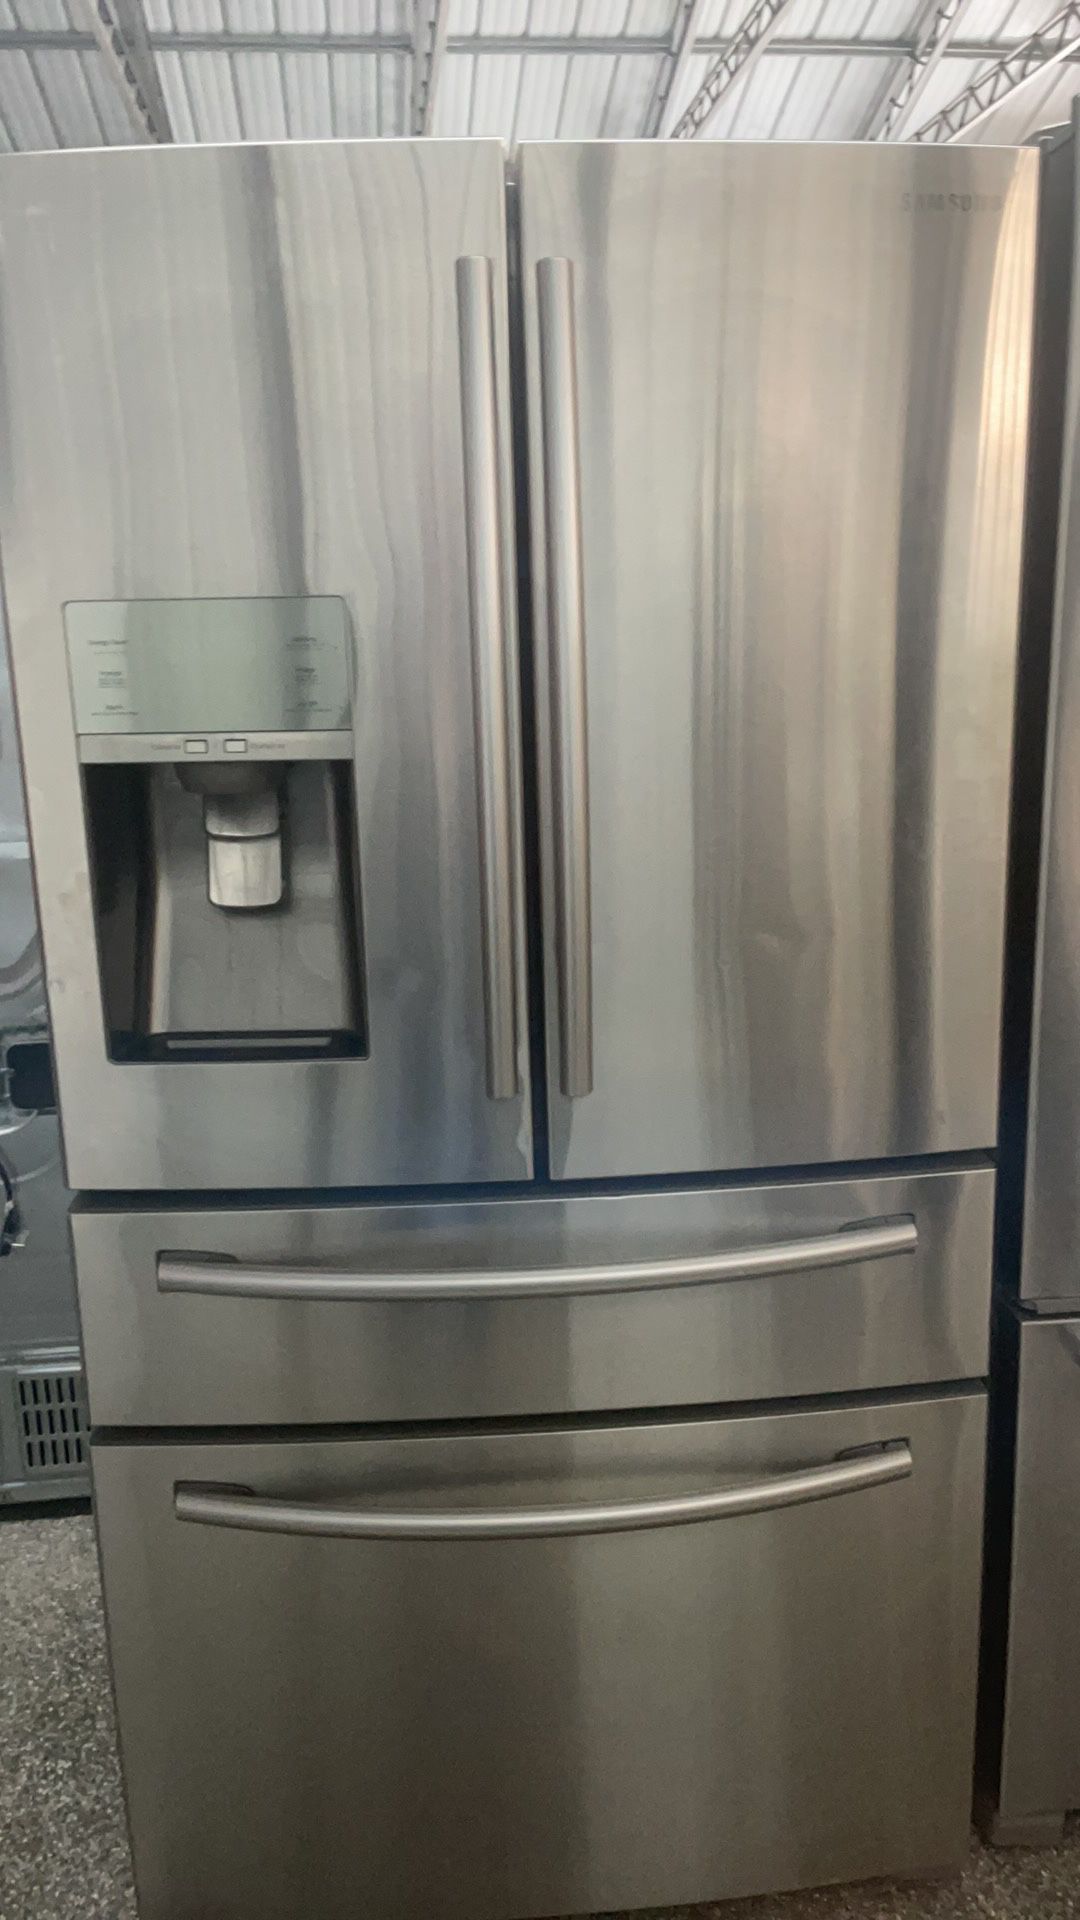 Delivered Samsung French Door Refrigerator 